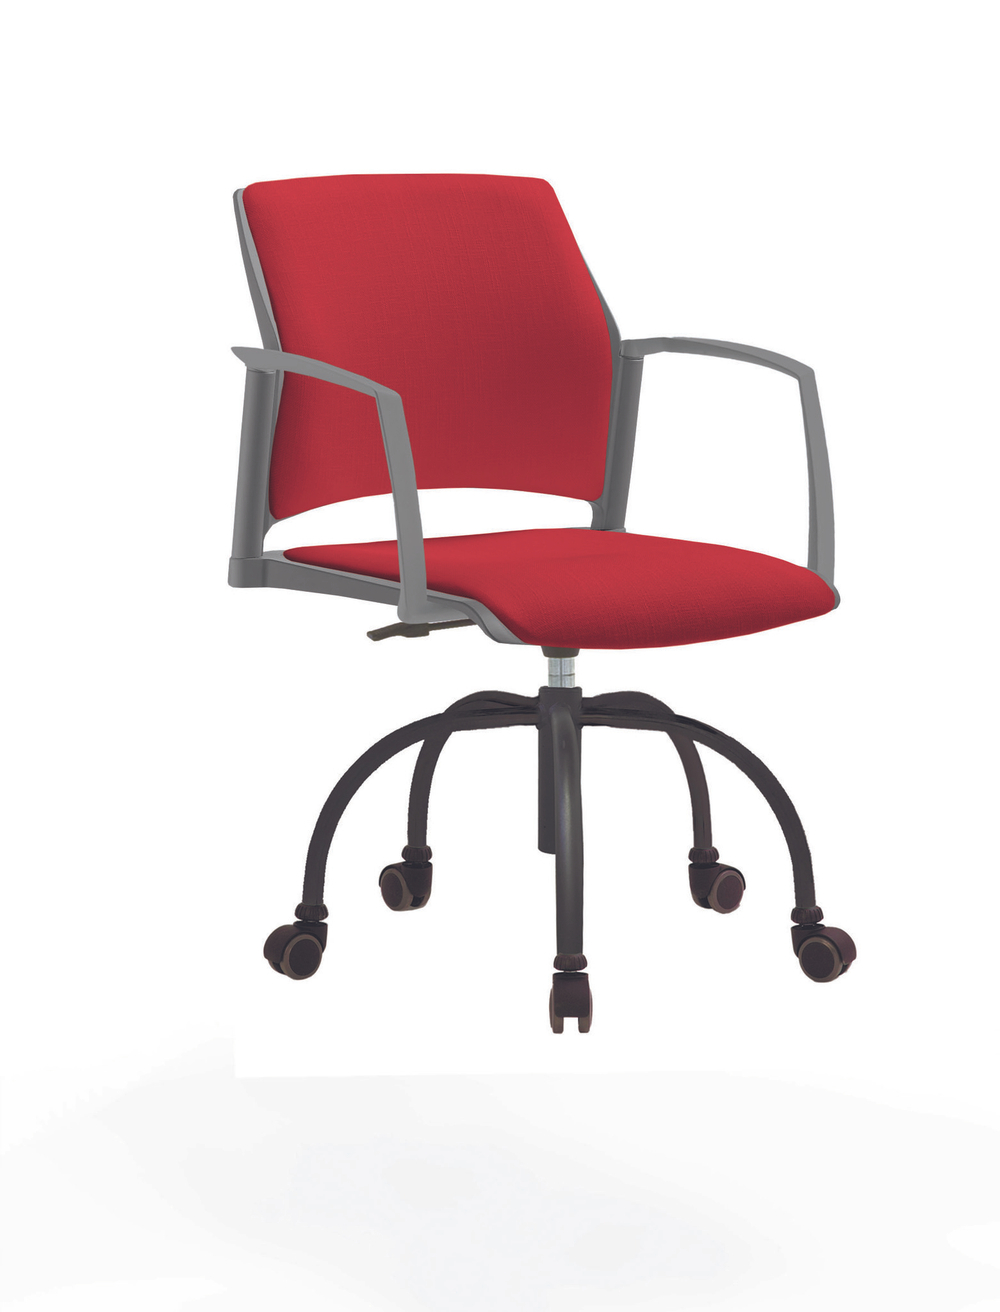 Кресло Rewind каркас черный, пластик серый, база паук краска черная, с закрытыми подлокотниками, сиденье и спинка красные